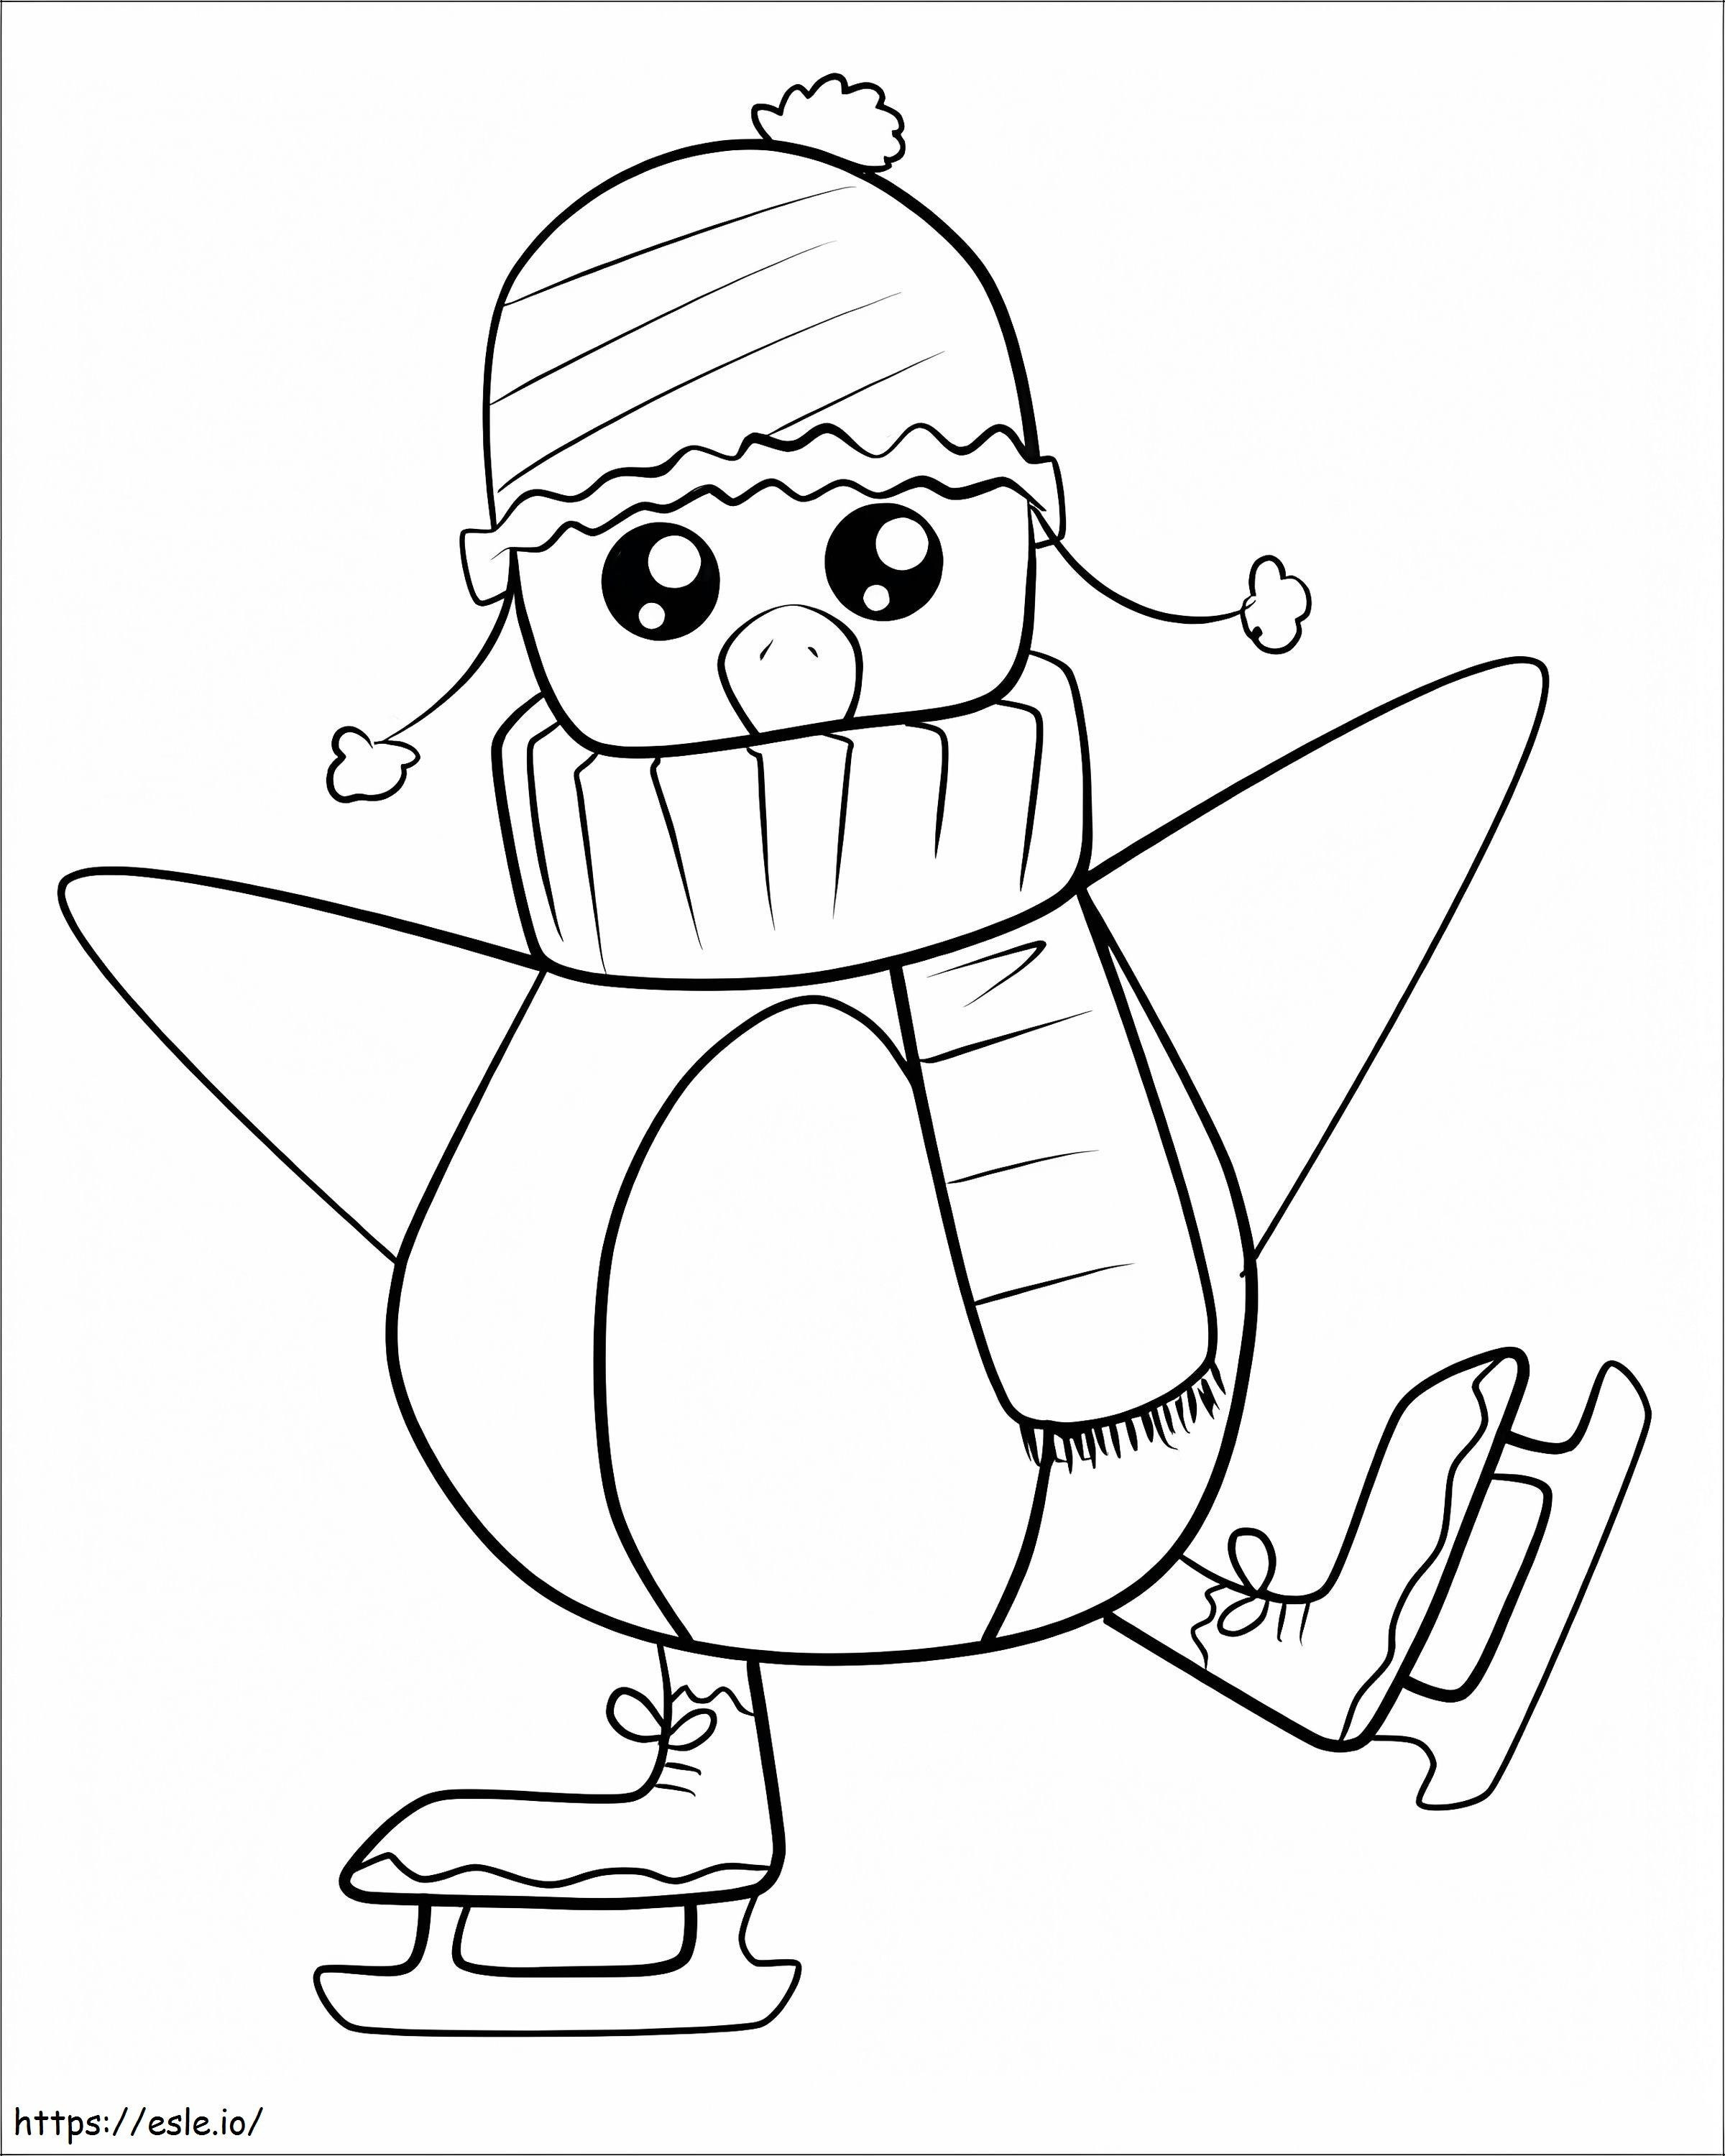 Pingwin na łyżwach kolorowanka